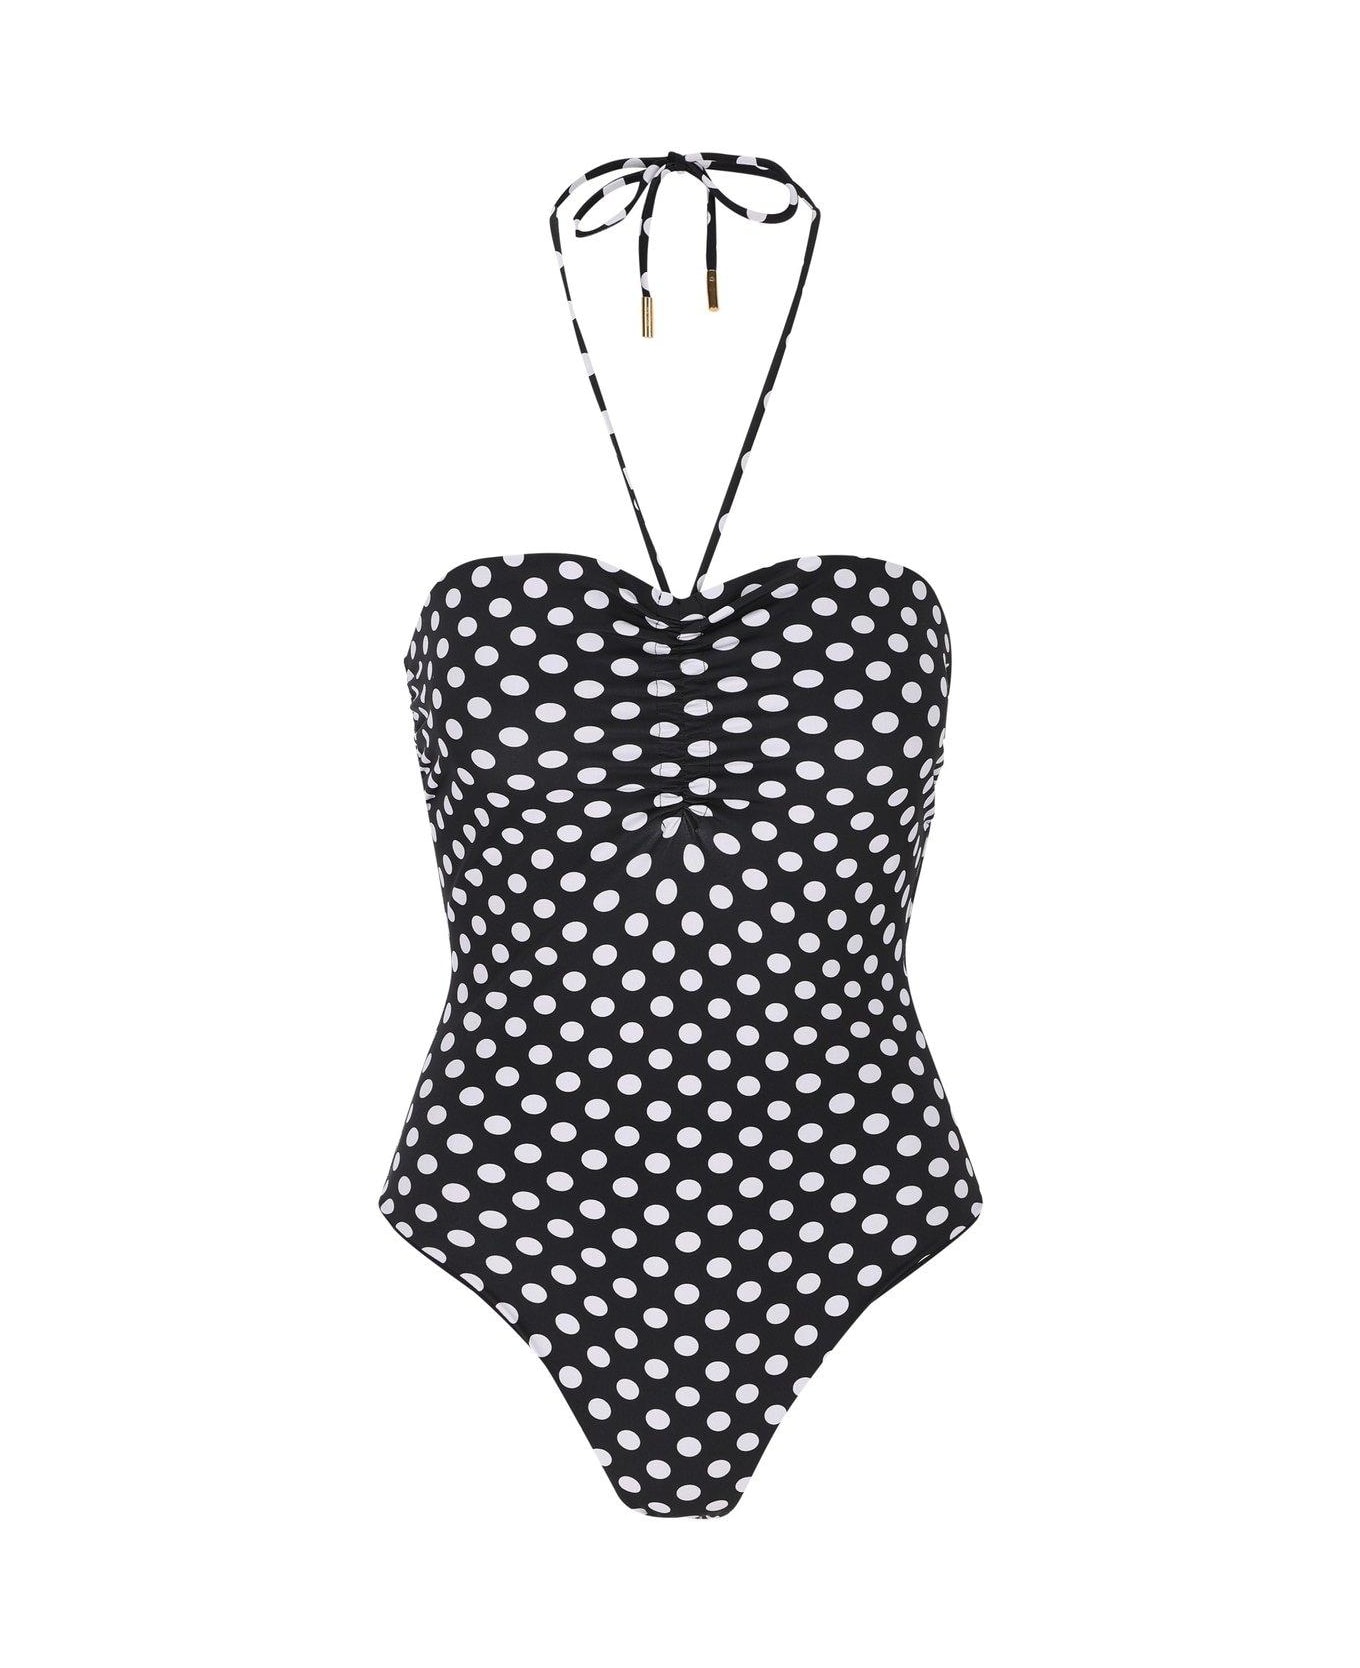 Saint Laurent Dotted Bustier Swimsuit - Noir/naturel